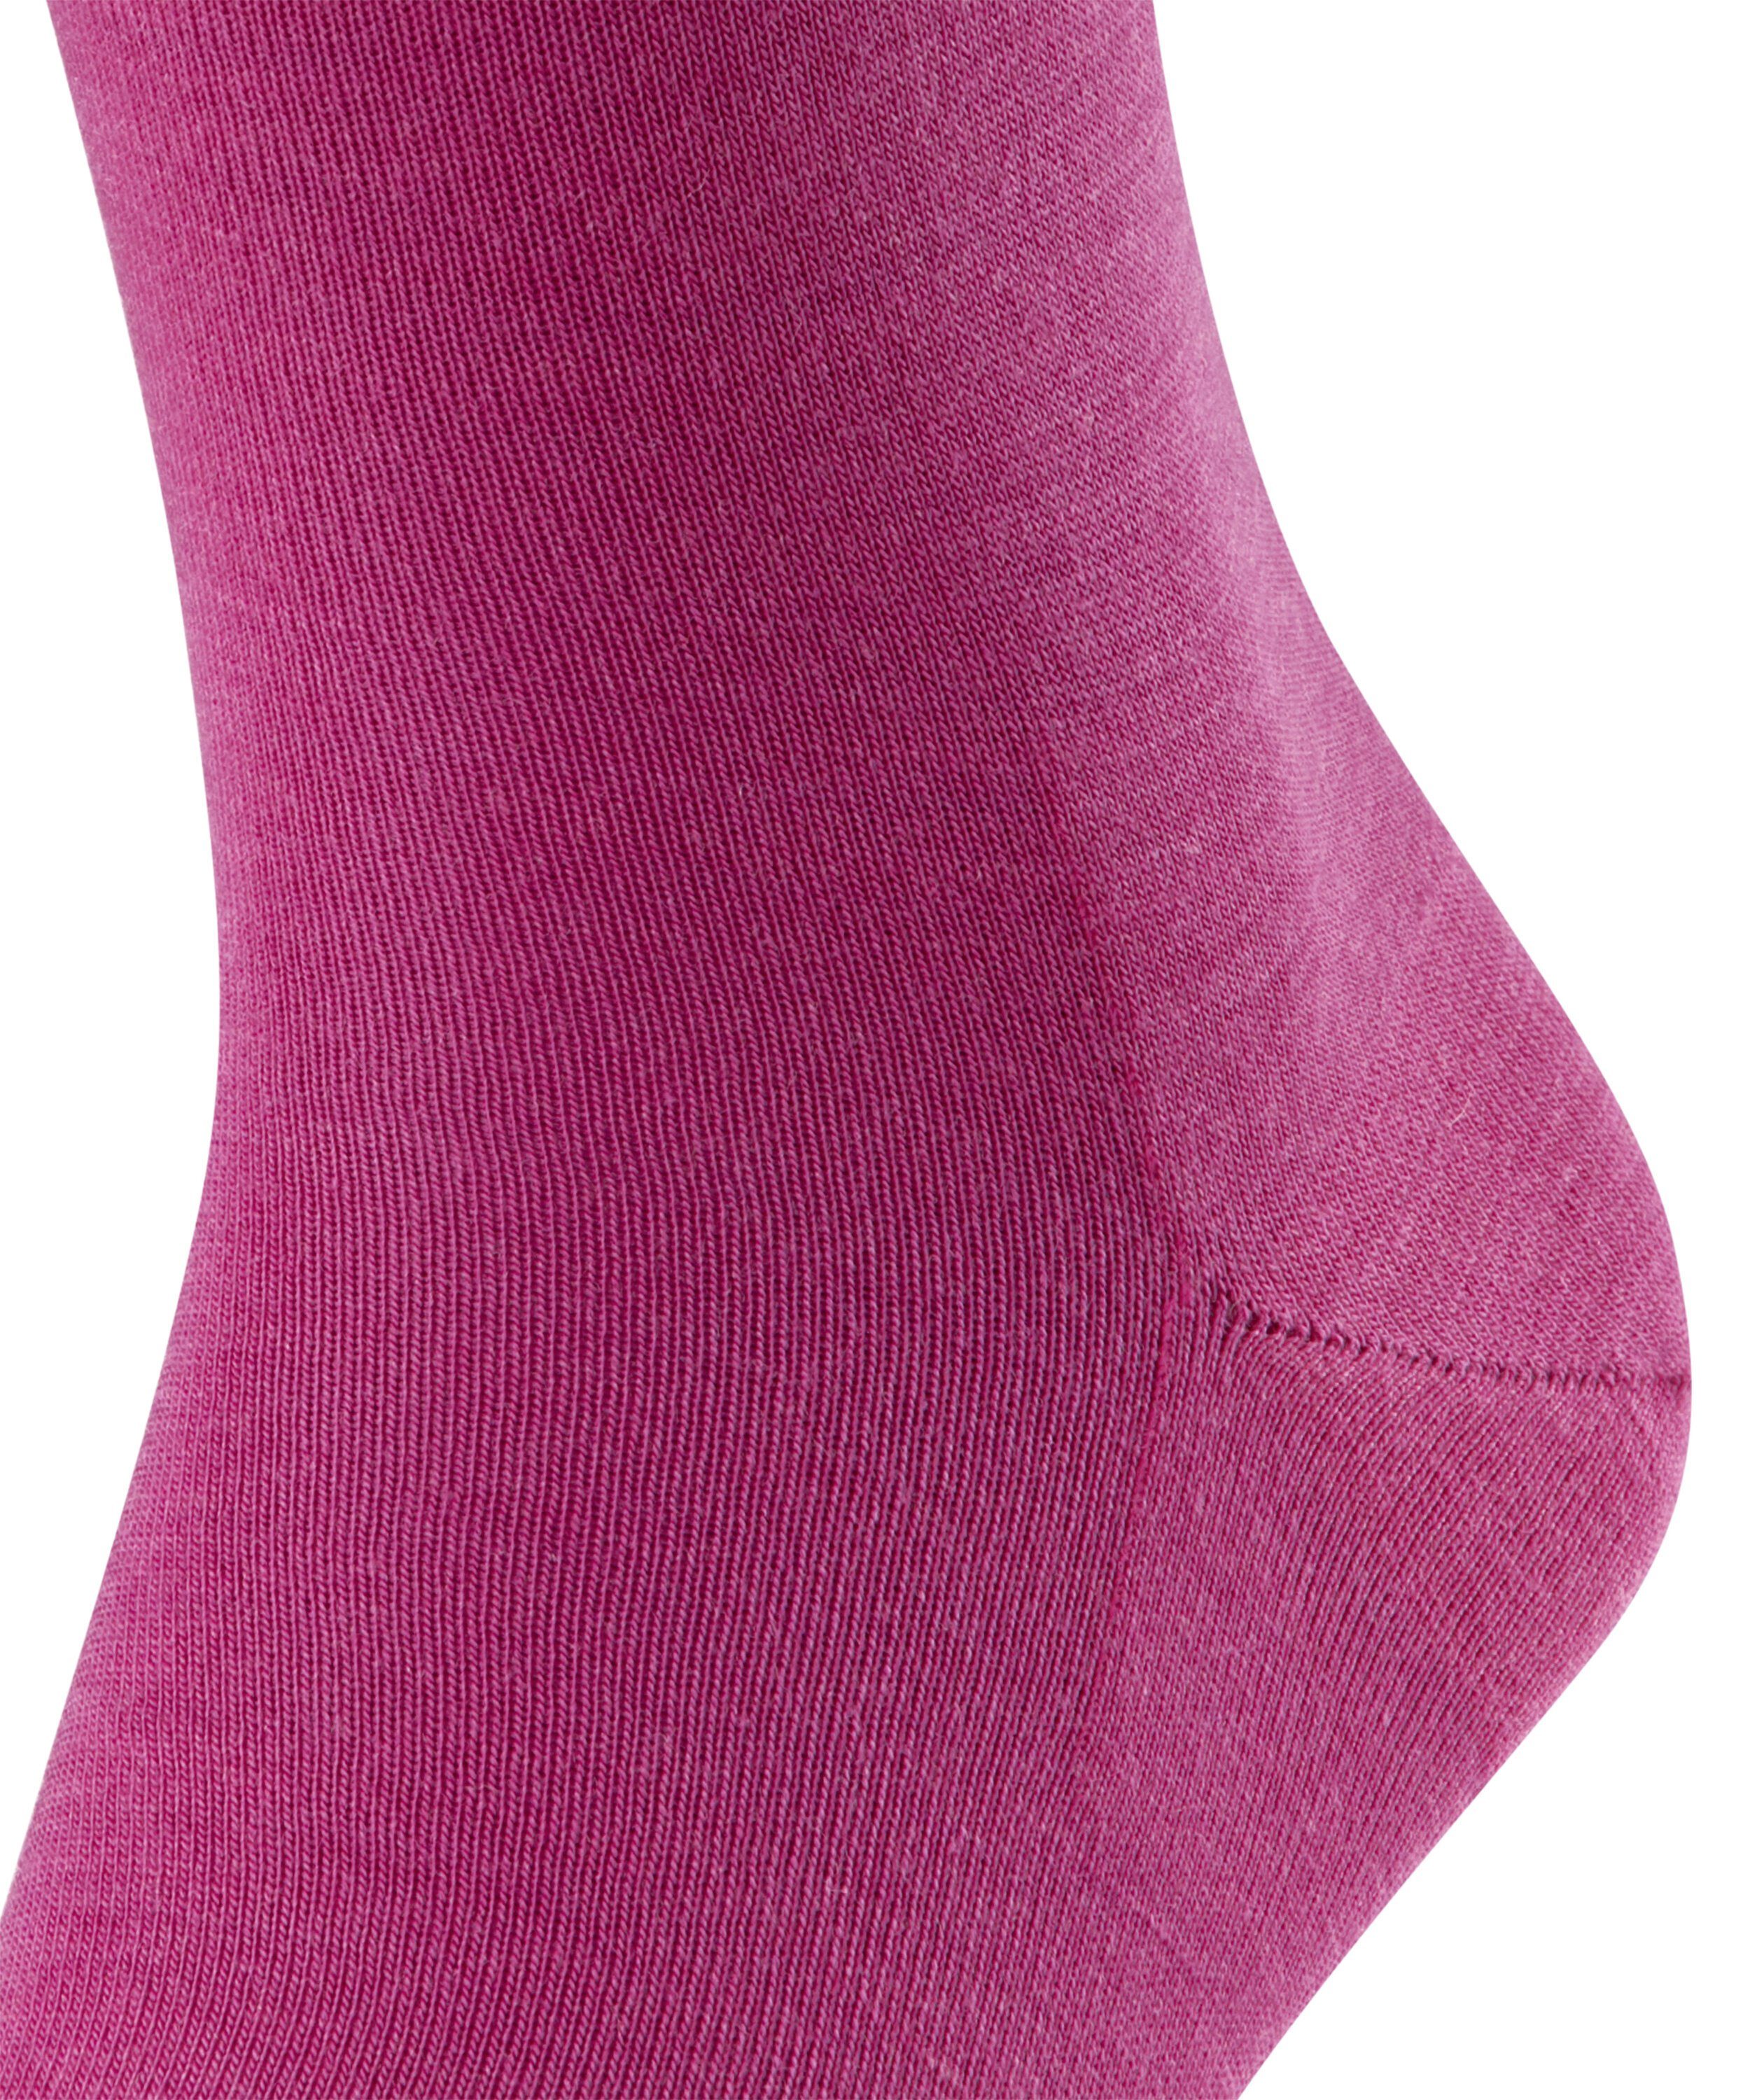 arctic (8233) FALKE Airport pink (1-Paar) Socken